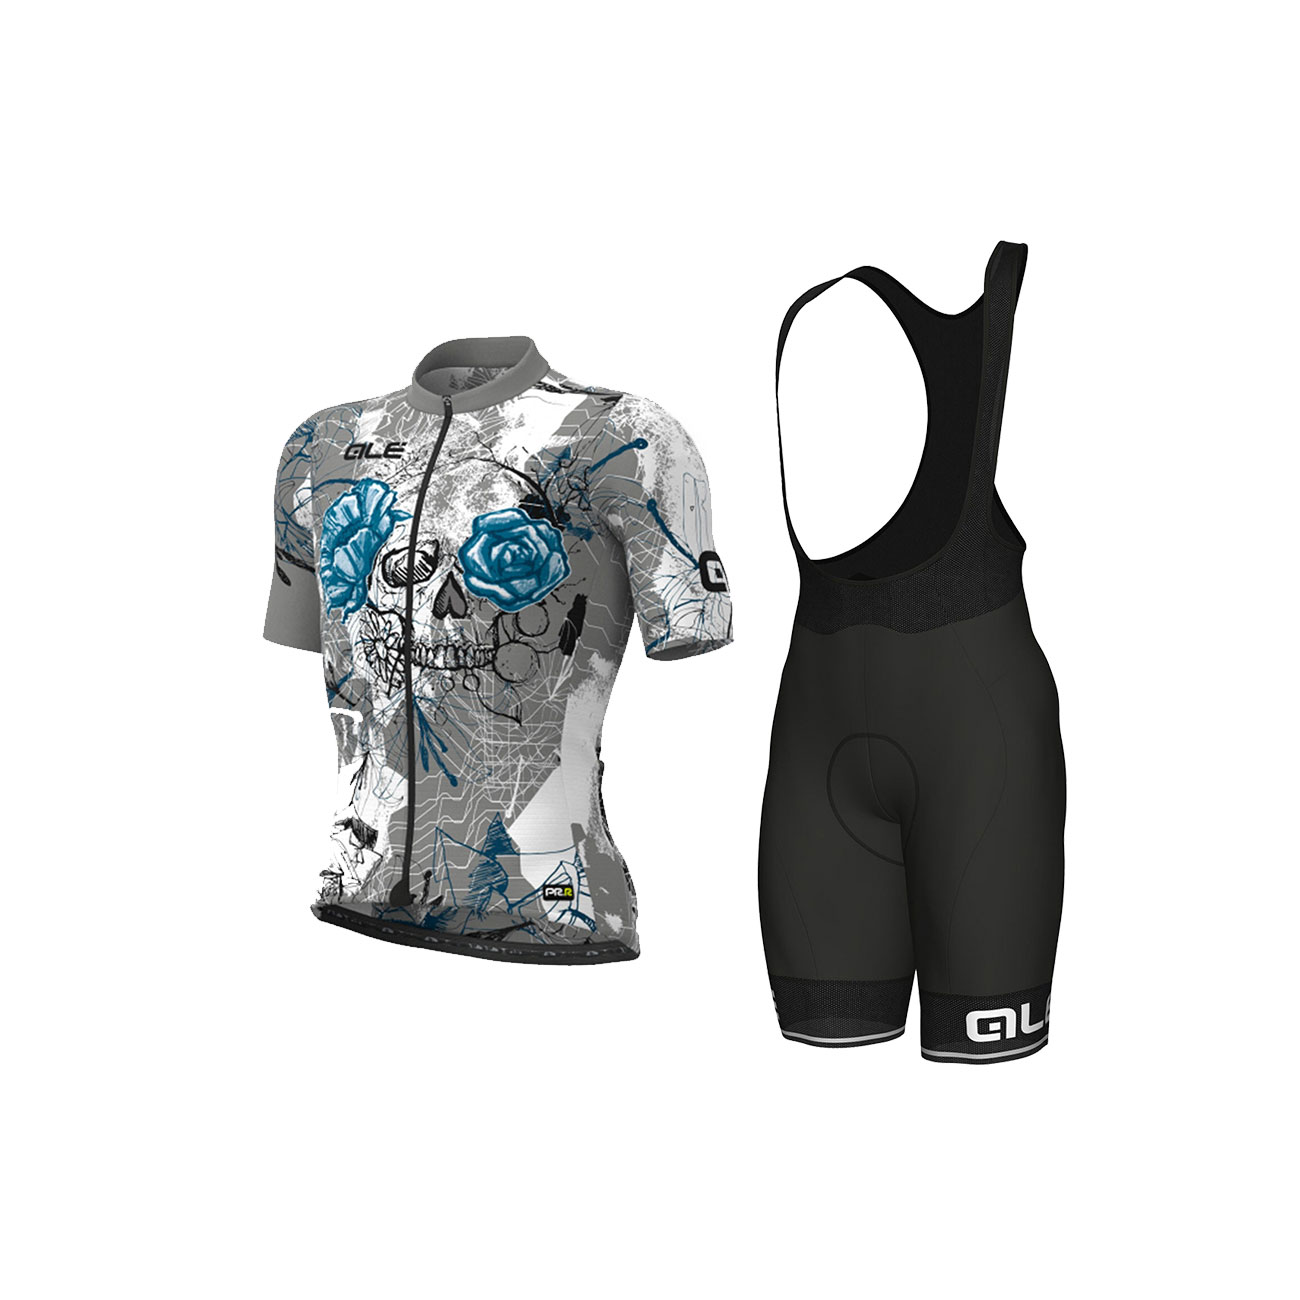 
                ALÉ Cyklistický krátký dres a krátké kalhoty - SKULL - černá/bílá/šedá/světle modrá
            